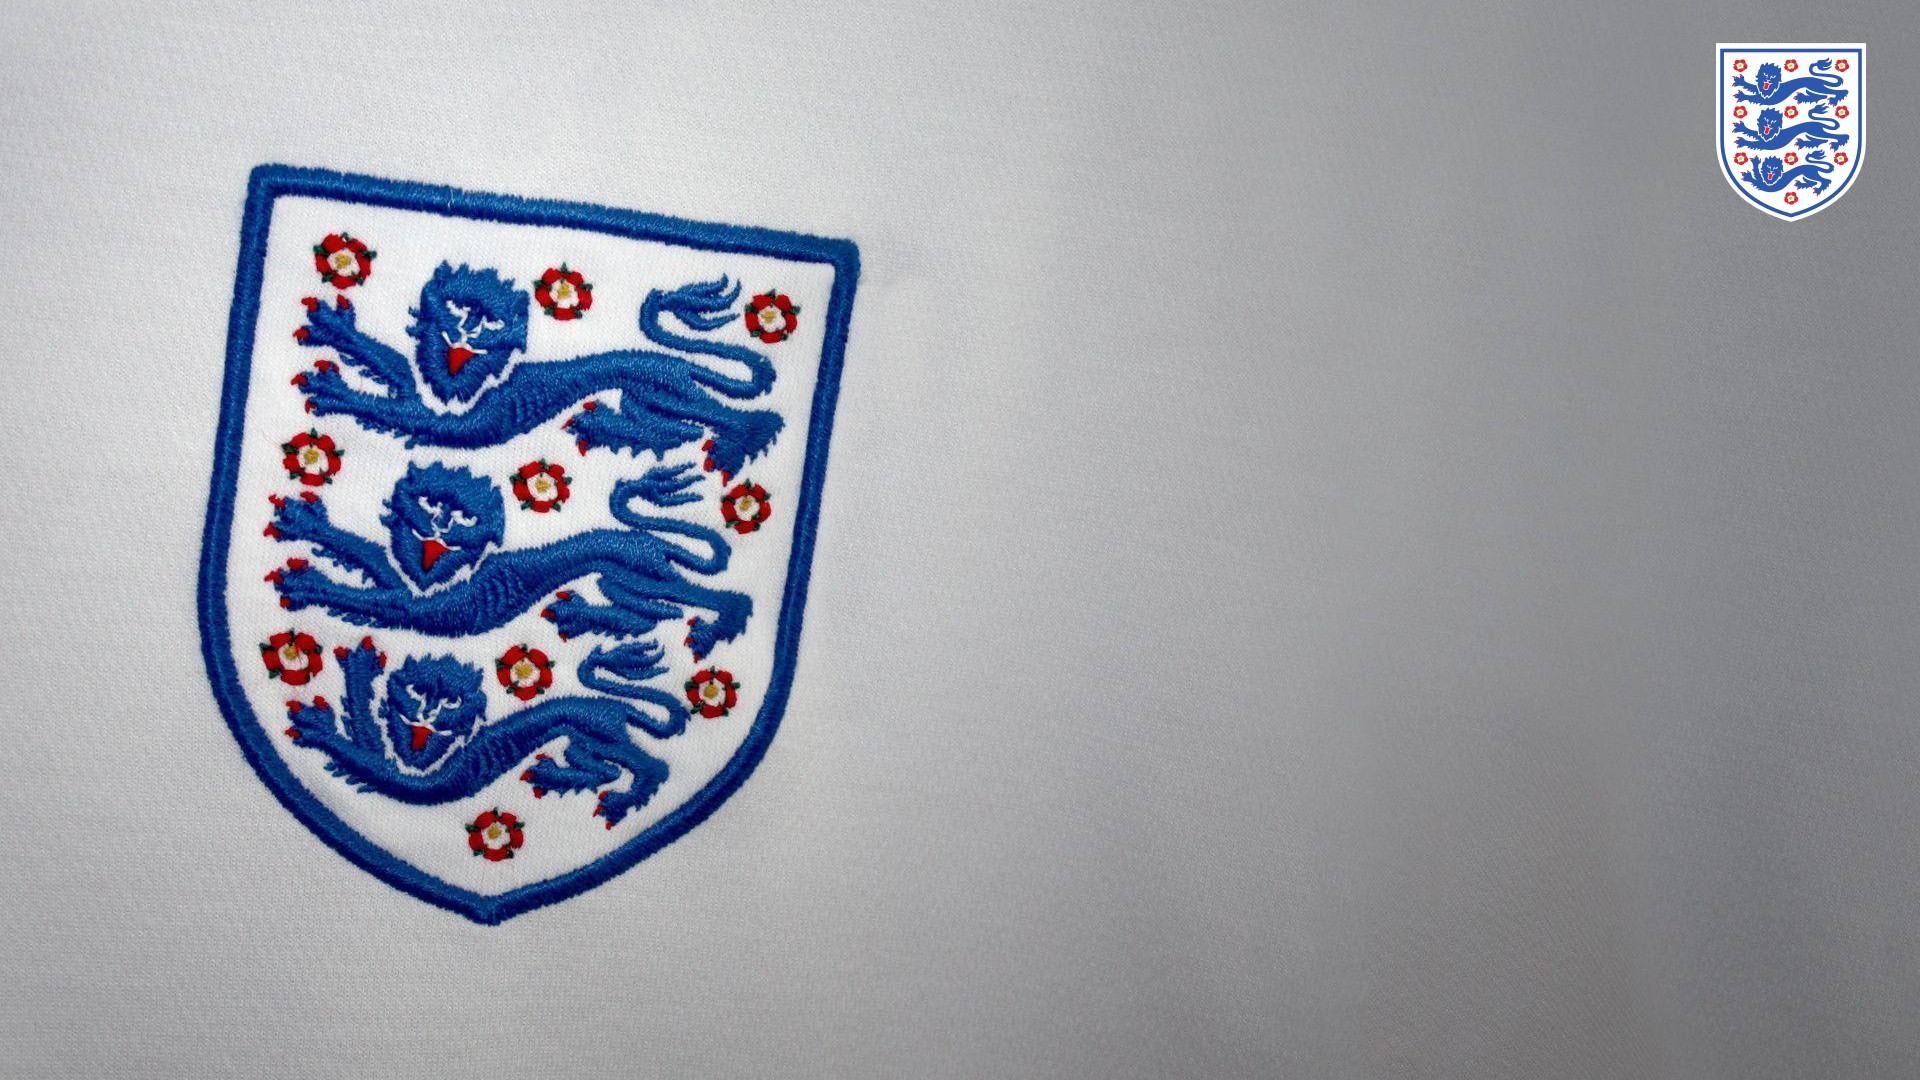 [24+] England World Cup Wallpapers on WallpaperSafari